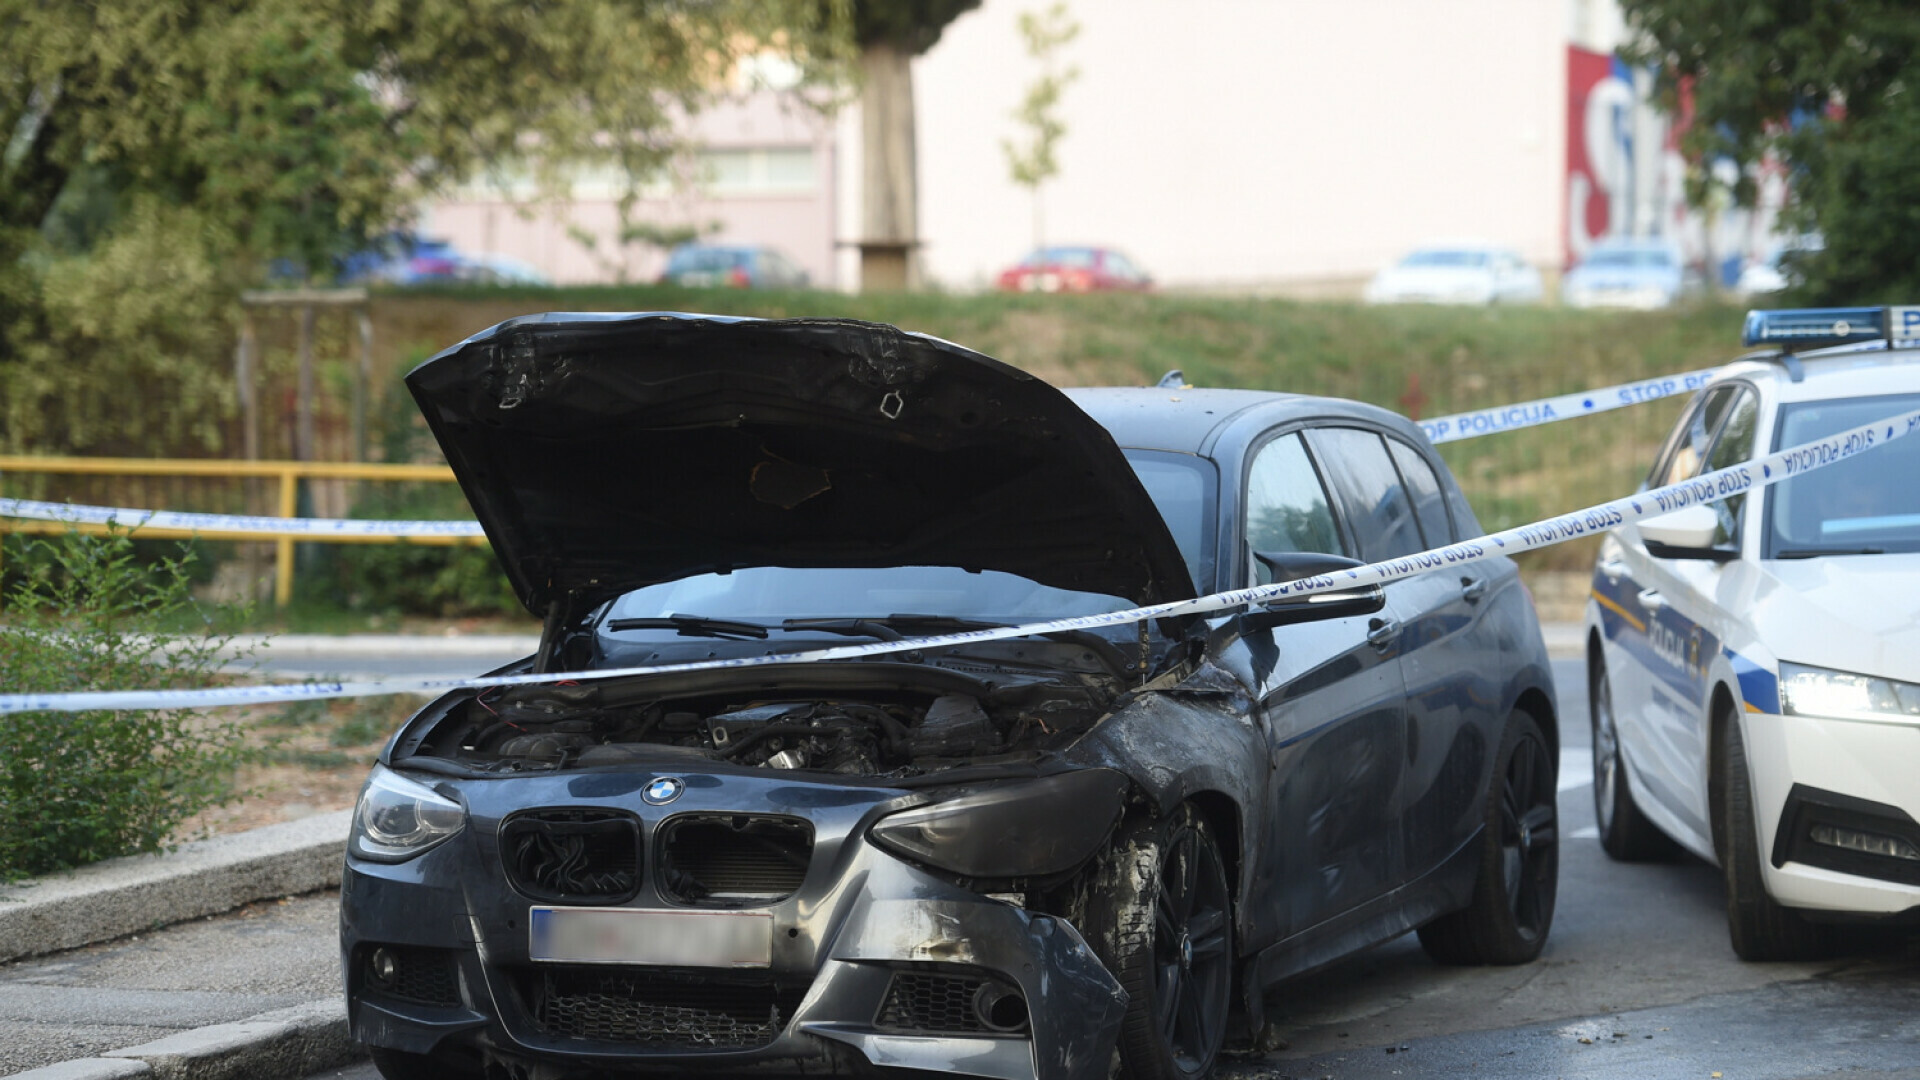 FOTO “Nisam ni muhu zgazio”: Vlasnik izgorenog BMW-a sumnja da mu je netko namjerno zapalio auto